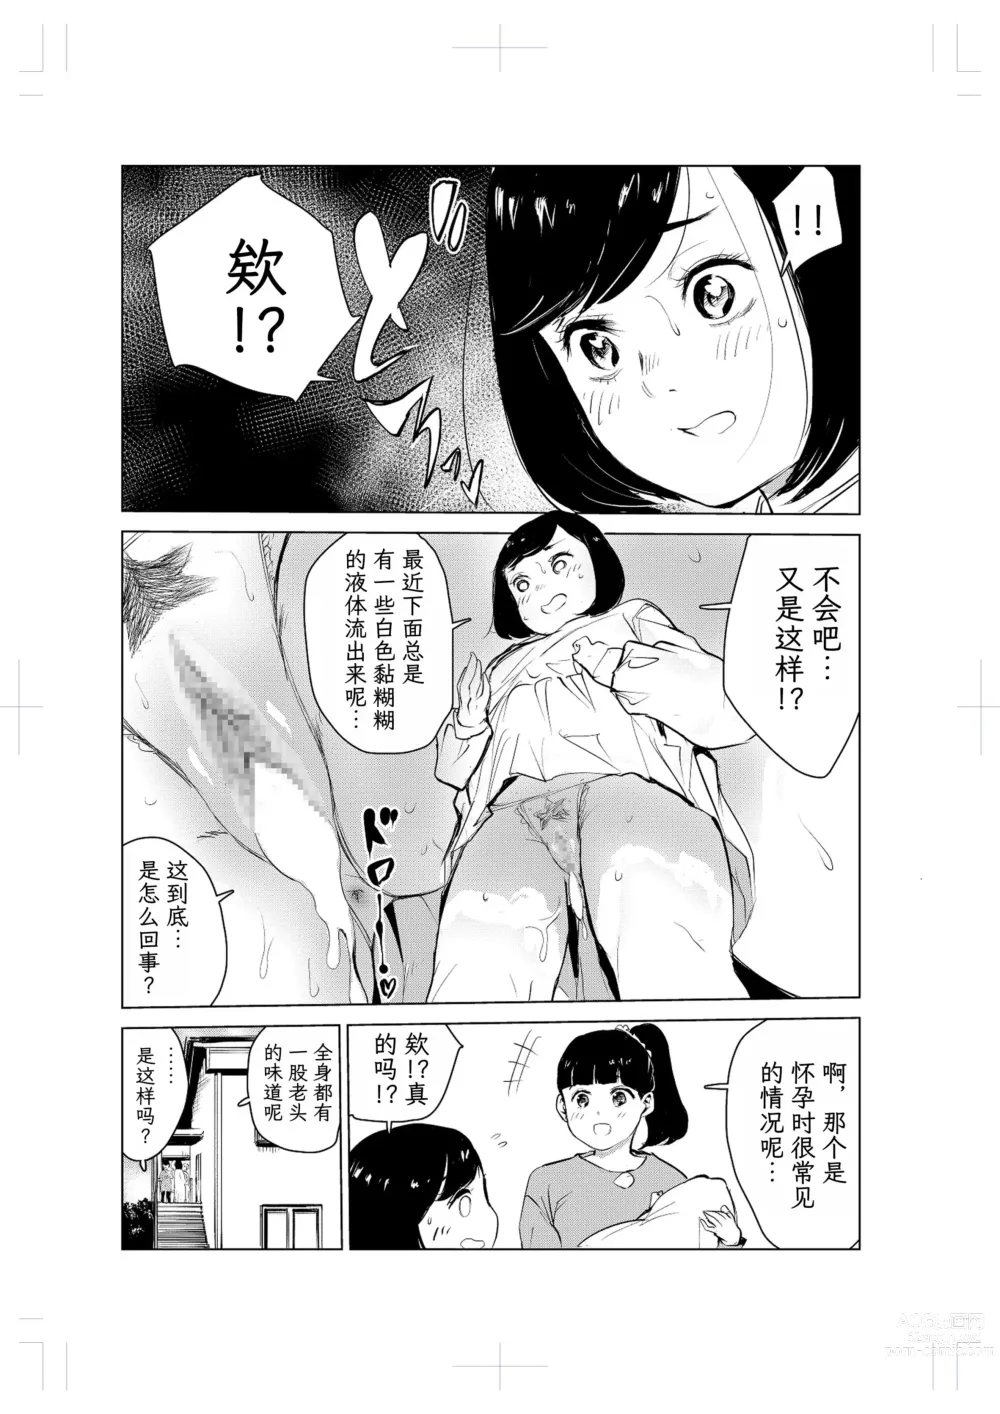 Page 18 of doujinshi 40-sai no Mahoutsukai 2